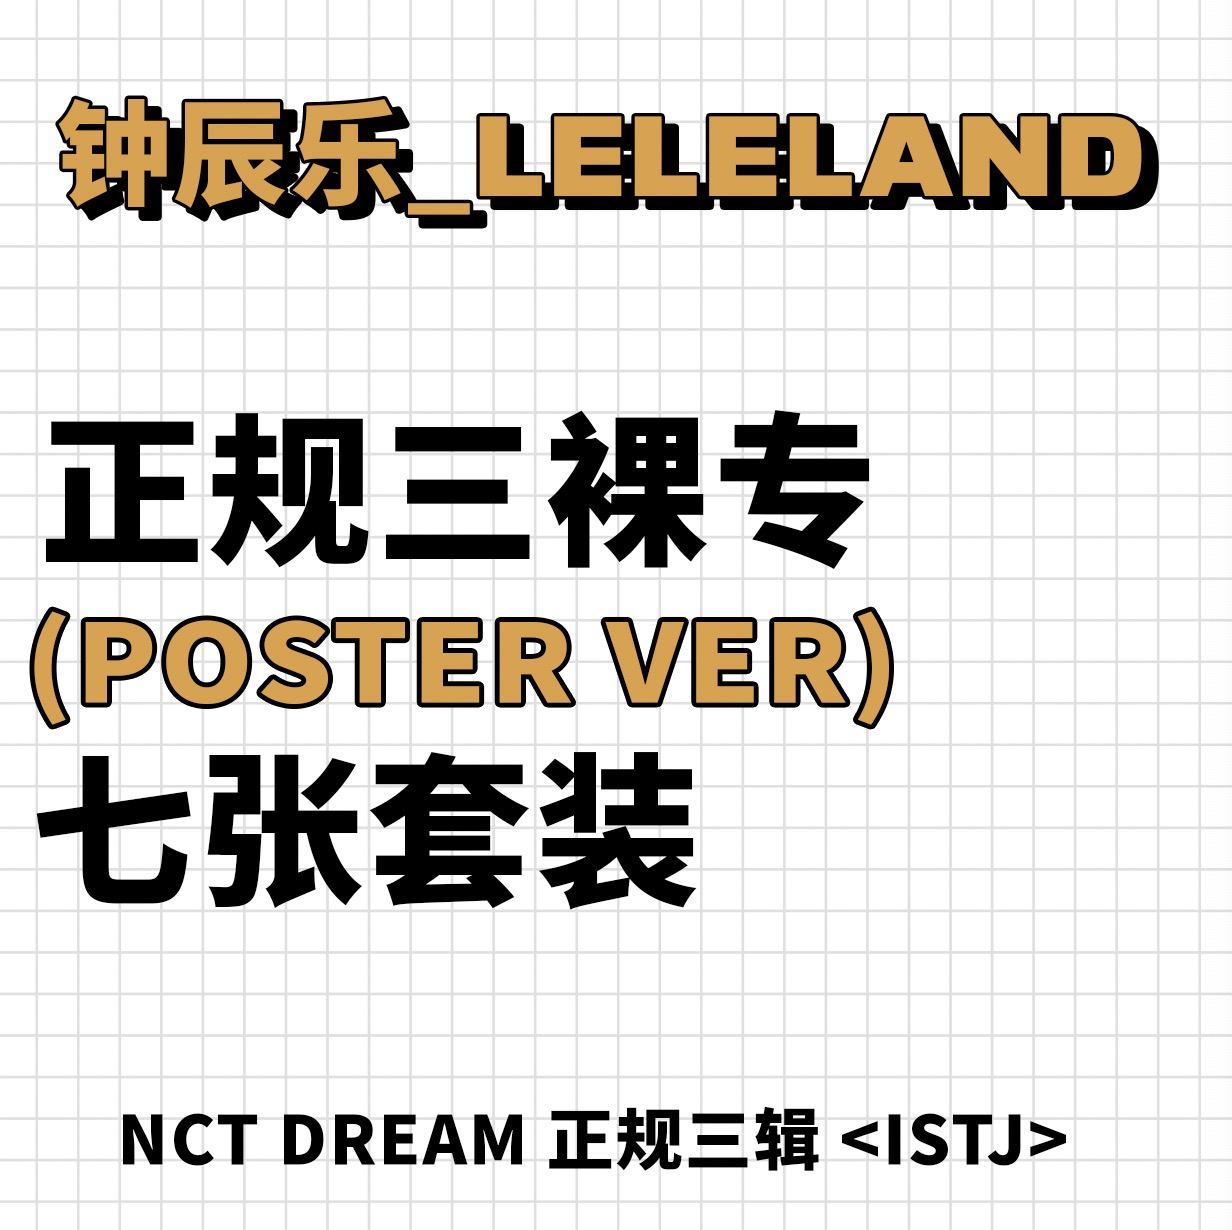 [全款 裸专] [7CD 套装] NCT DREAM - 正规3辑 [ISTJ] (Poster Ver.)_钟辰乐吧_ChenLeBar